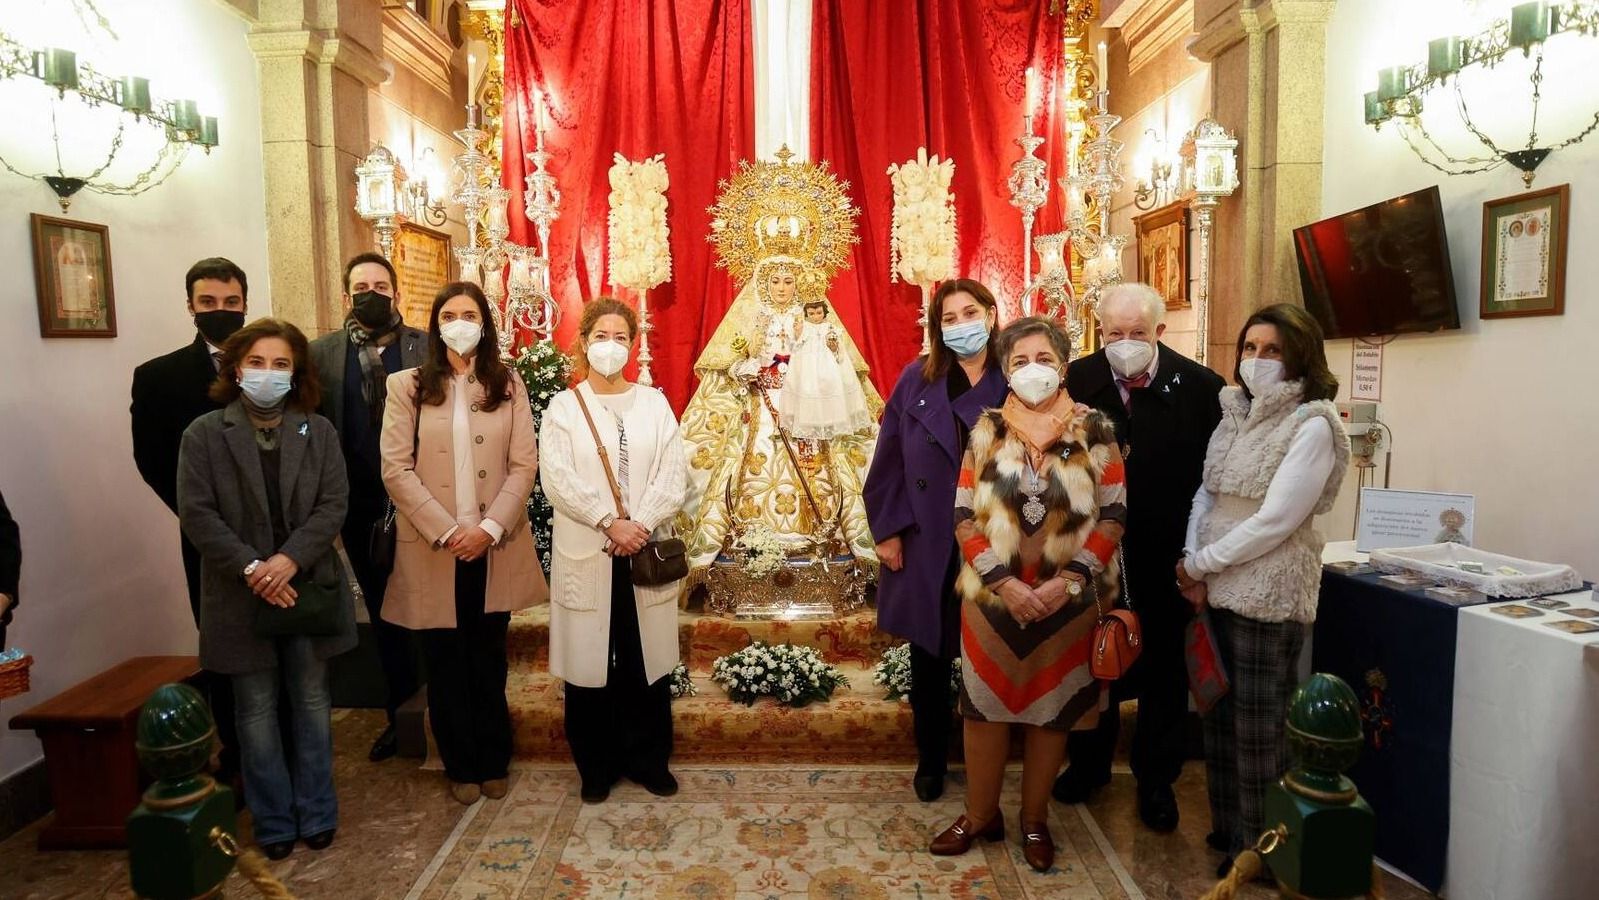 Quislant pide a Nuestra Señora de la Consolación por el fin de la pandemia y la salud de los vecinos de Pozuelo